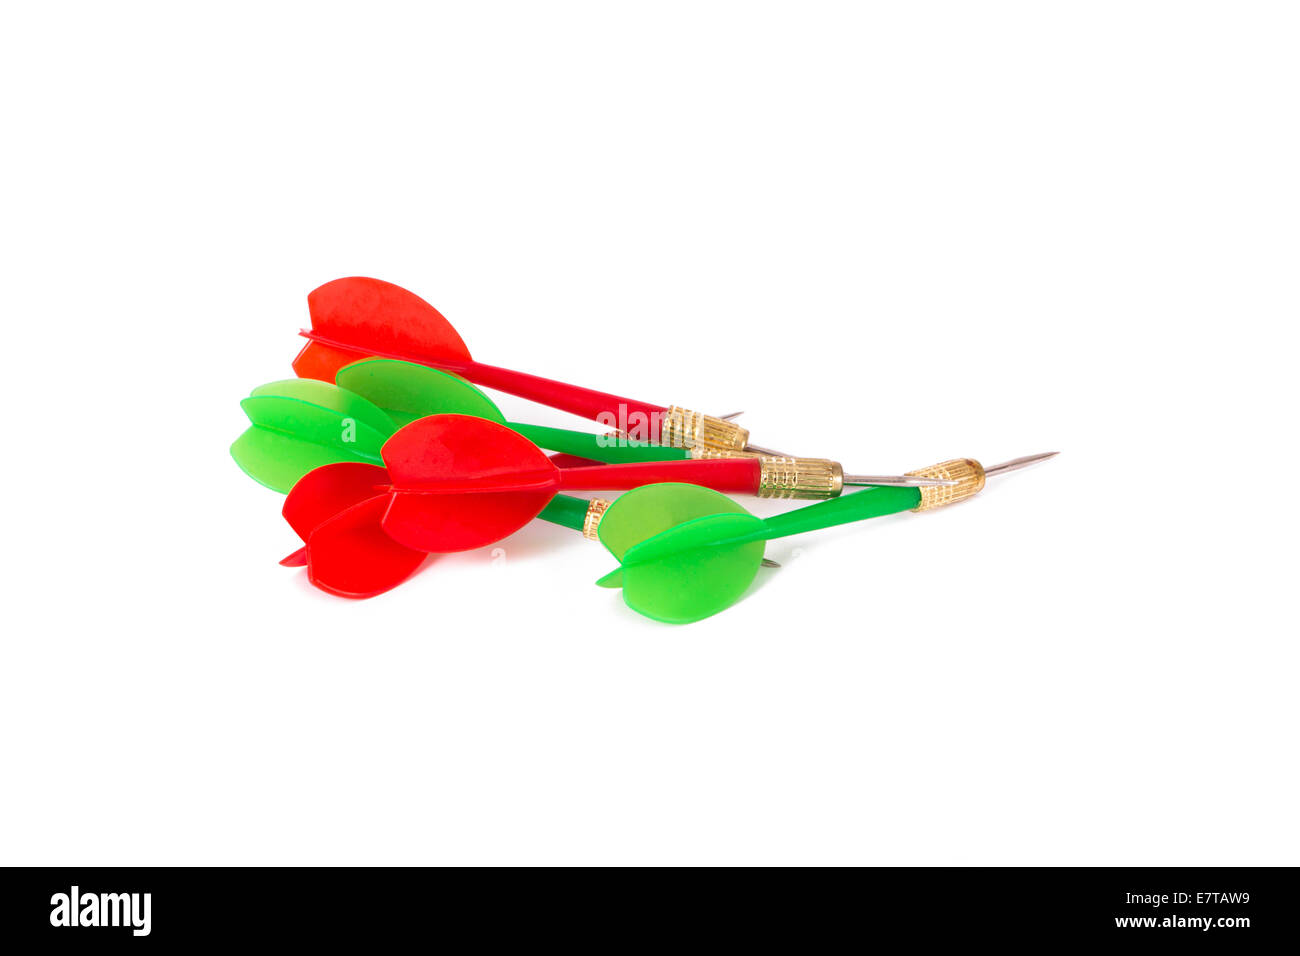 Plástico, verde y rojo, flechas dart aislado sobre fondo blanco. Foto de stock